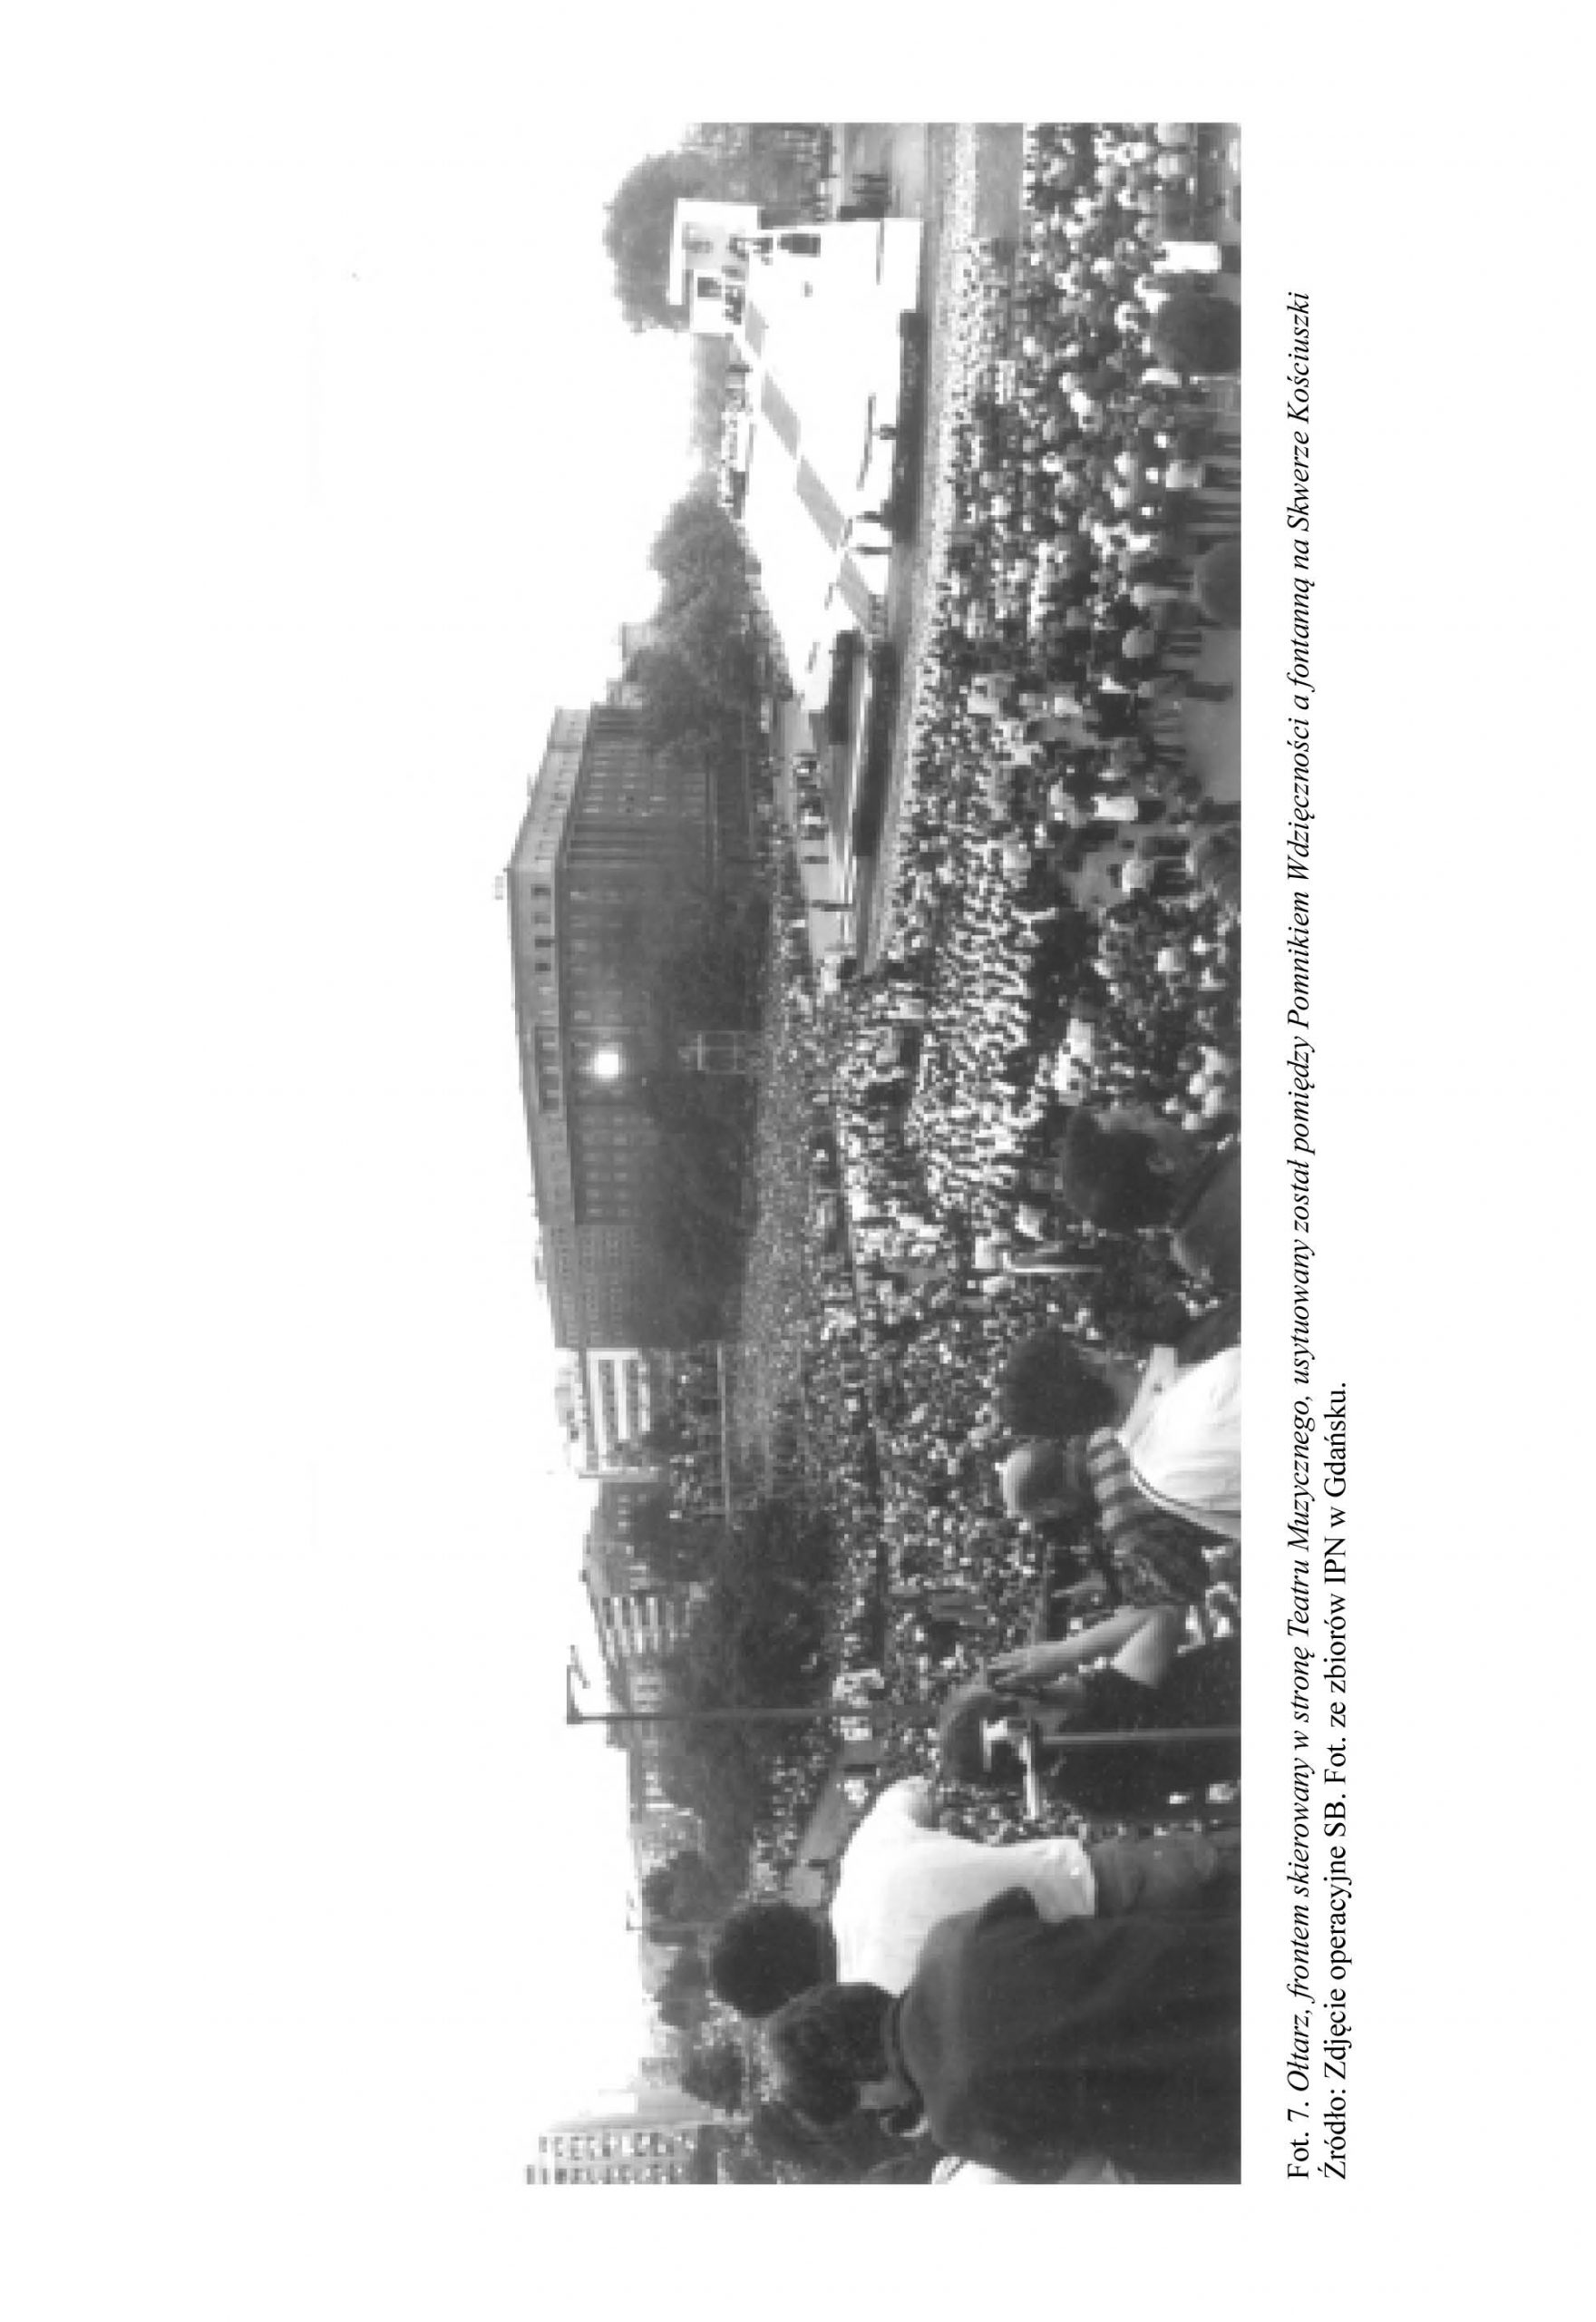 Wizyta Ojca Świętego Jana Pawła II w Gdyni w czerwcu 1987 roku w świetle materiałów operacyjnych Służby Bezpieczeństwa